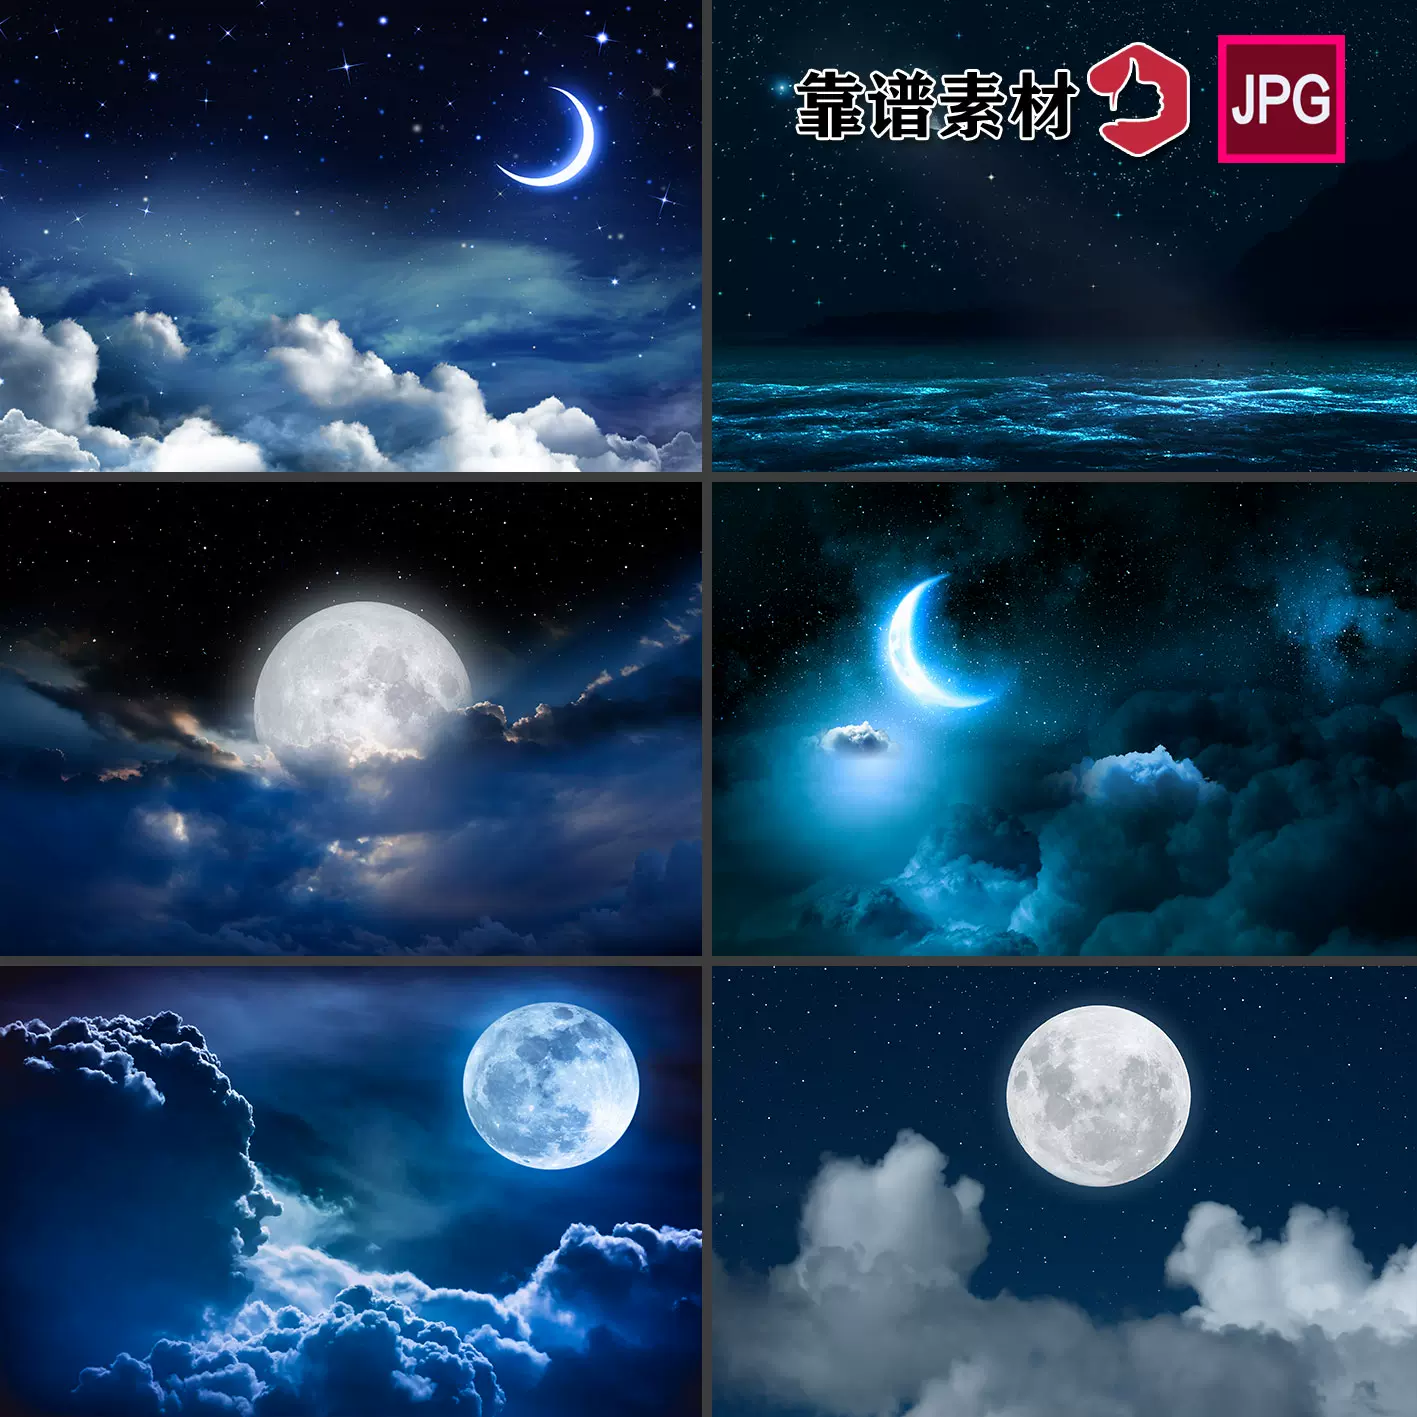 藍色夜空夜晚星空月光月亮雲彩天空壁紙壁紙圖片設計素材